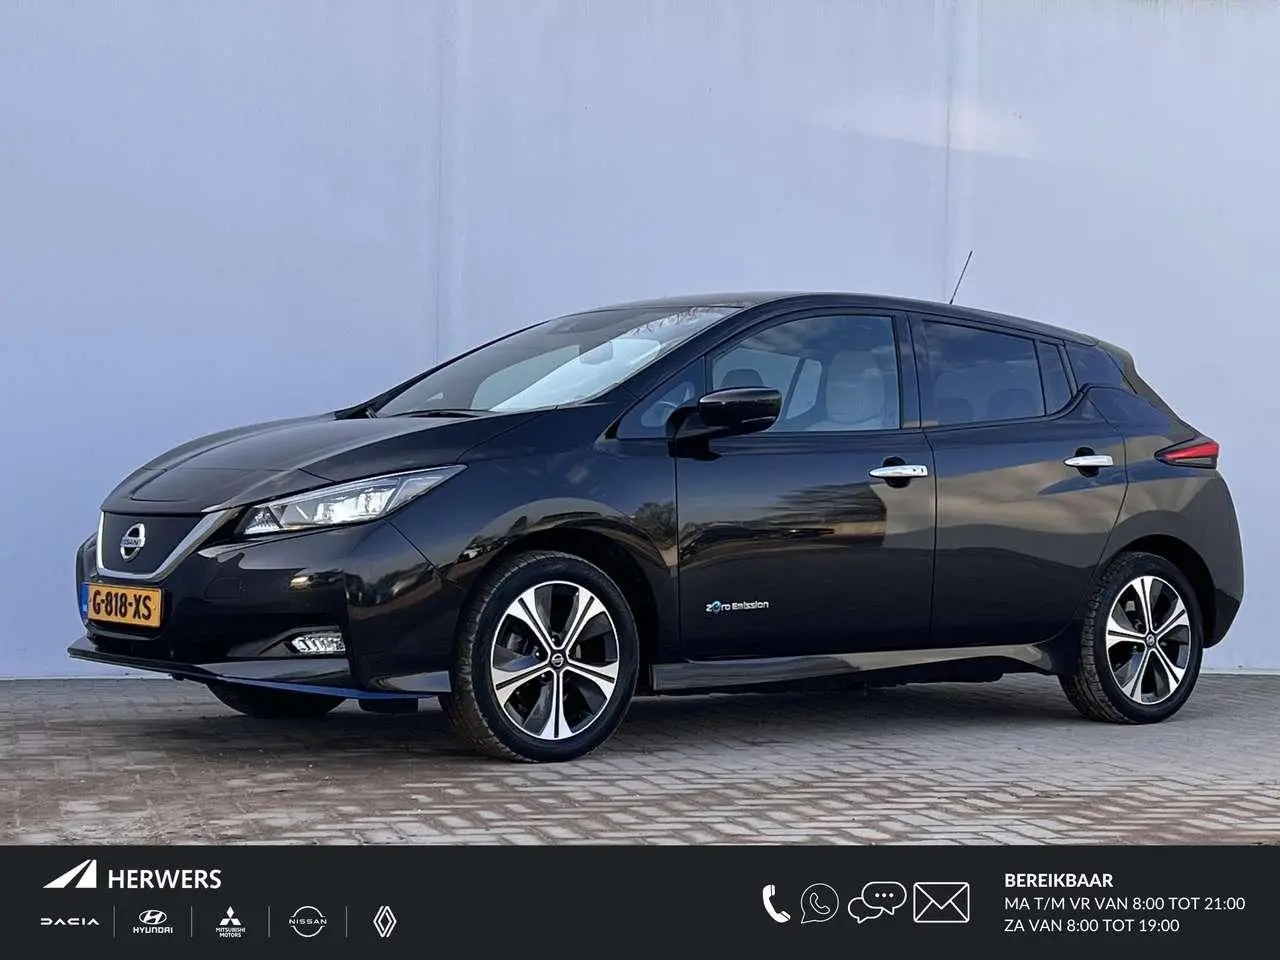 Photo 1 : Nissan Leaf 2019 Électrique